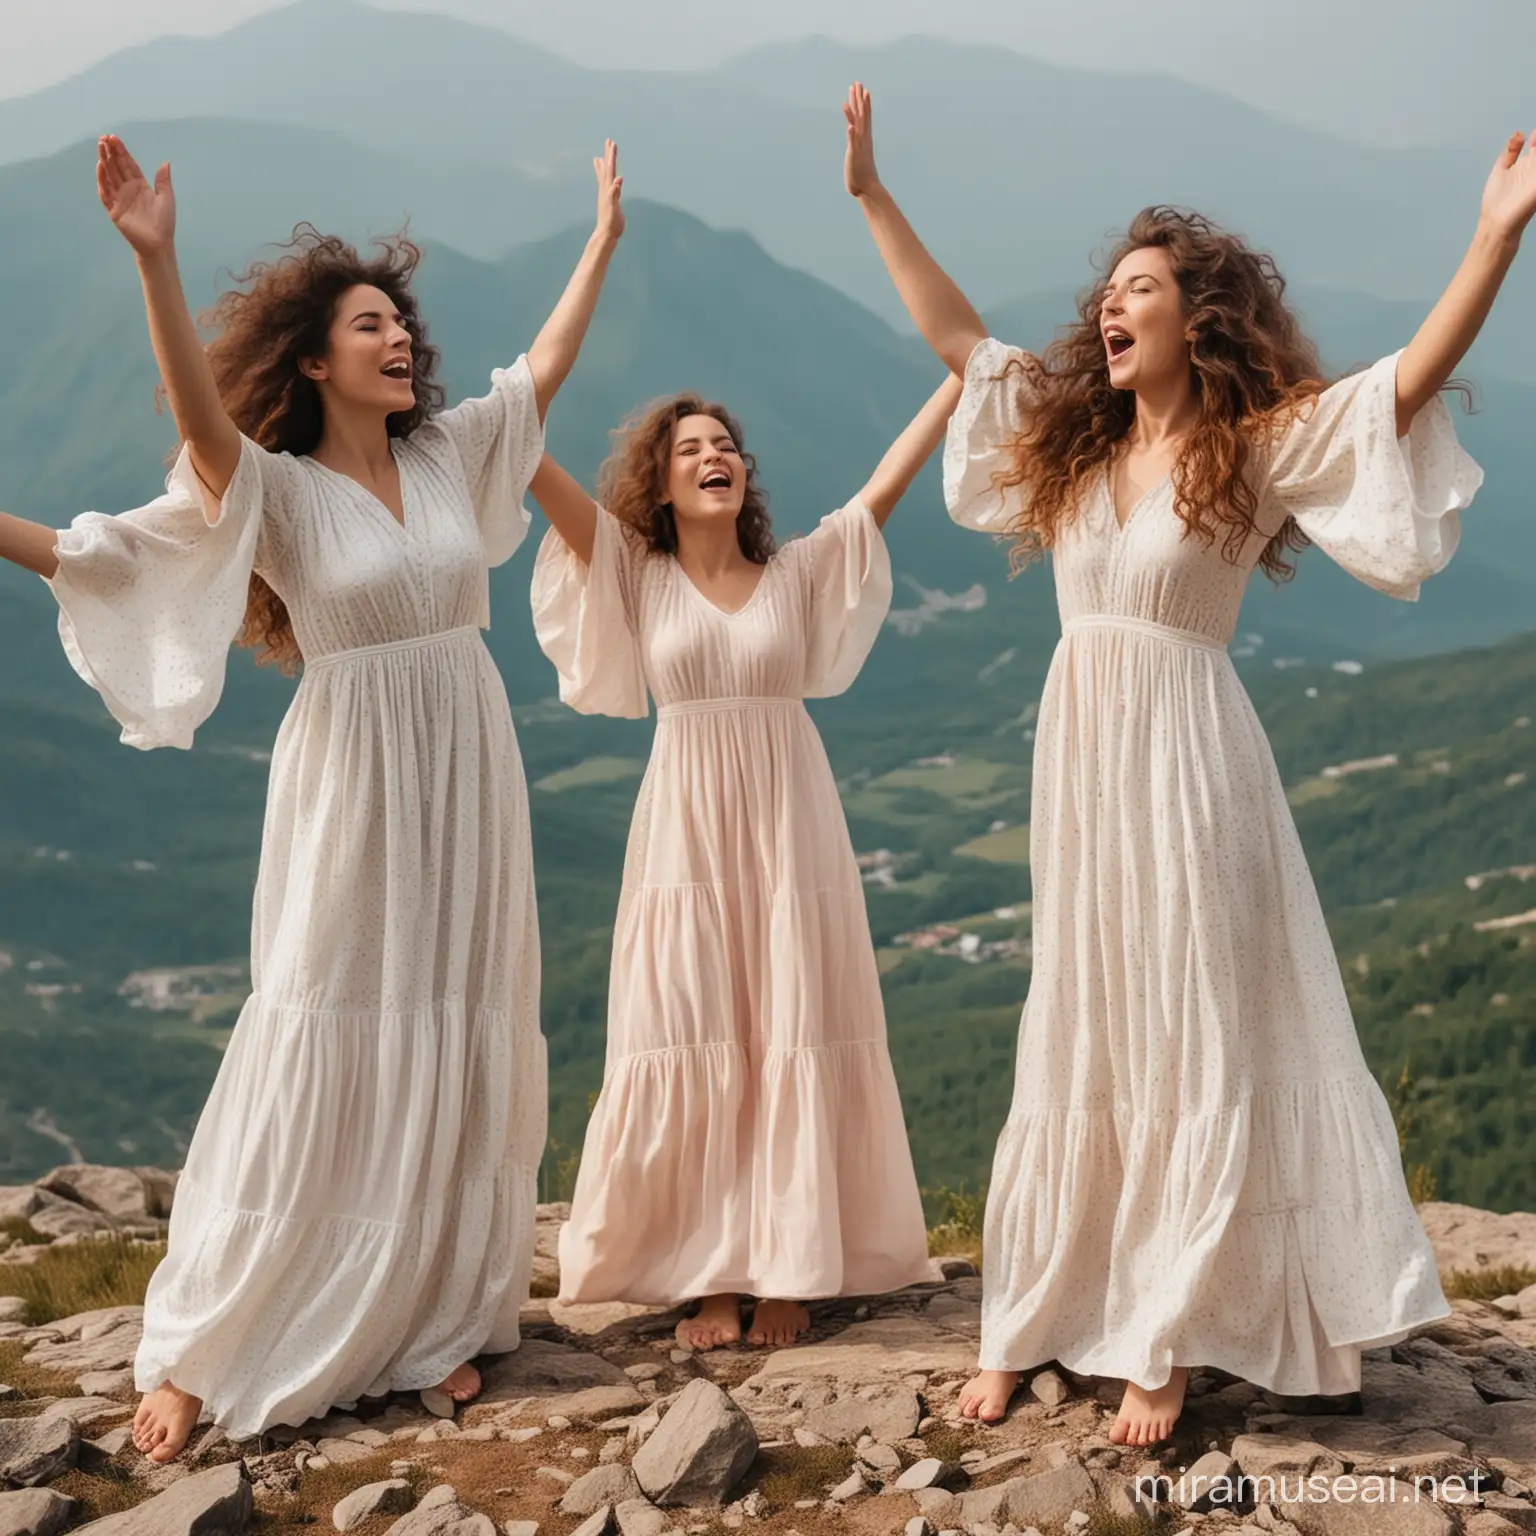 Stylishly Dressed Women Singing Joyfully at Mountain Summit